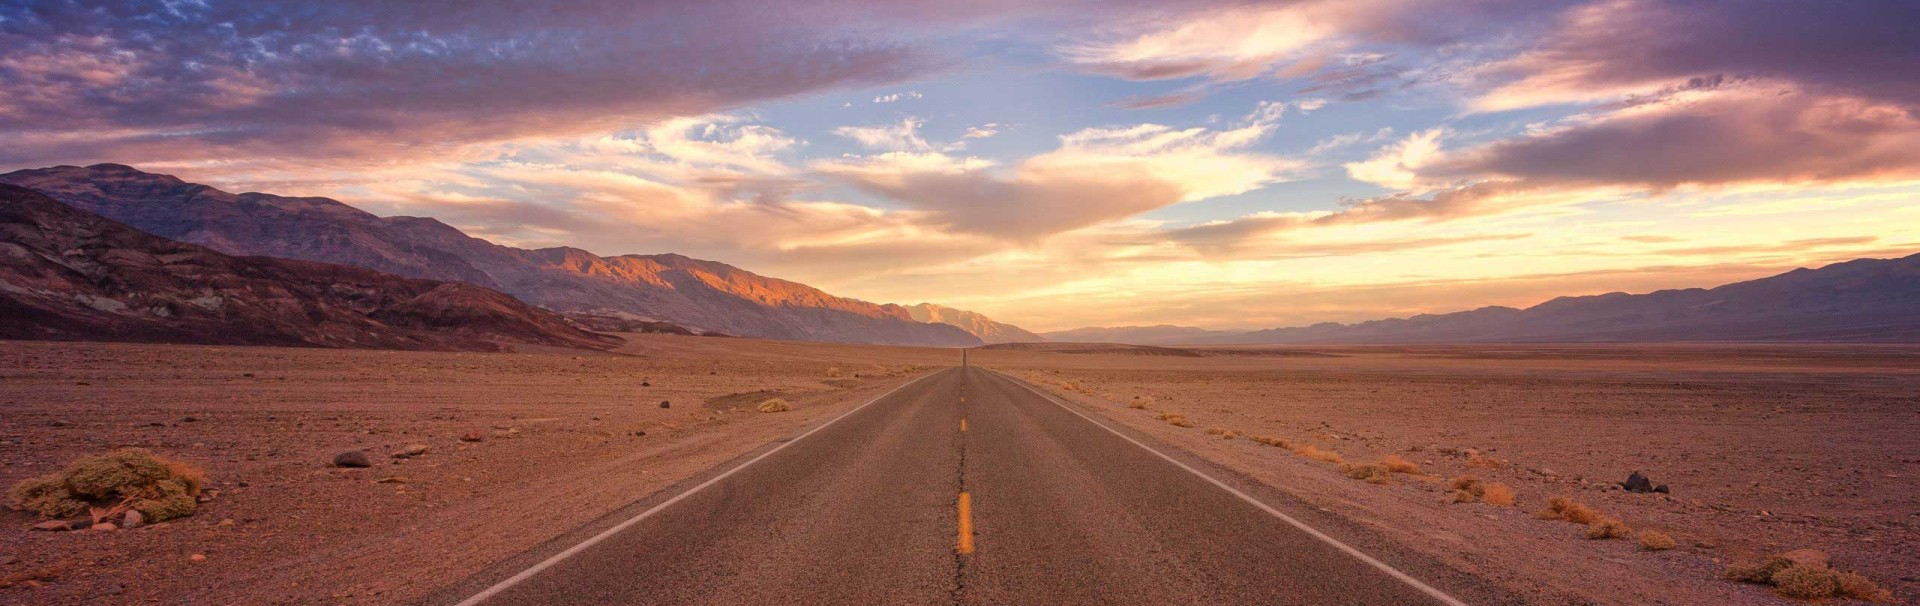 Eine asphaltierte Straße führt scheinbar endlos geradeaus. Die Umgebung ist eine Wüste, am Bildrand sind Hügel. Am Himmel sind Wolken, die von der untergegangenen Sonne in warme Farben getaucht werden.